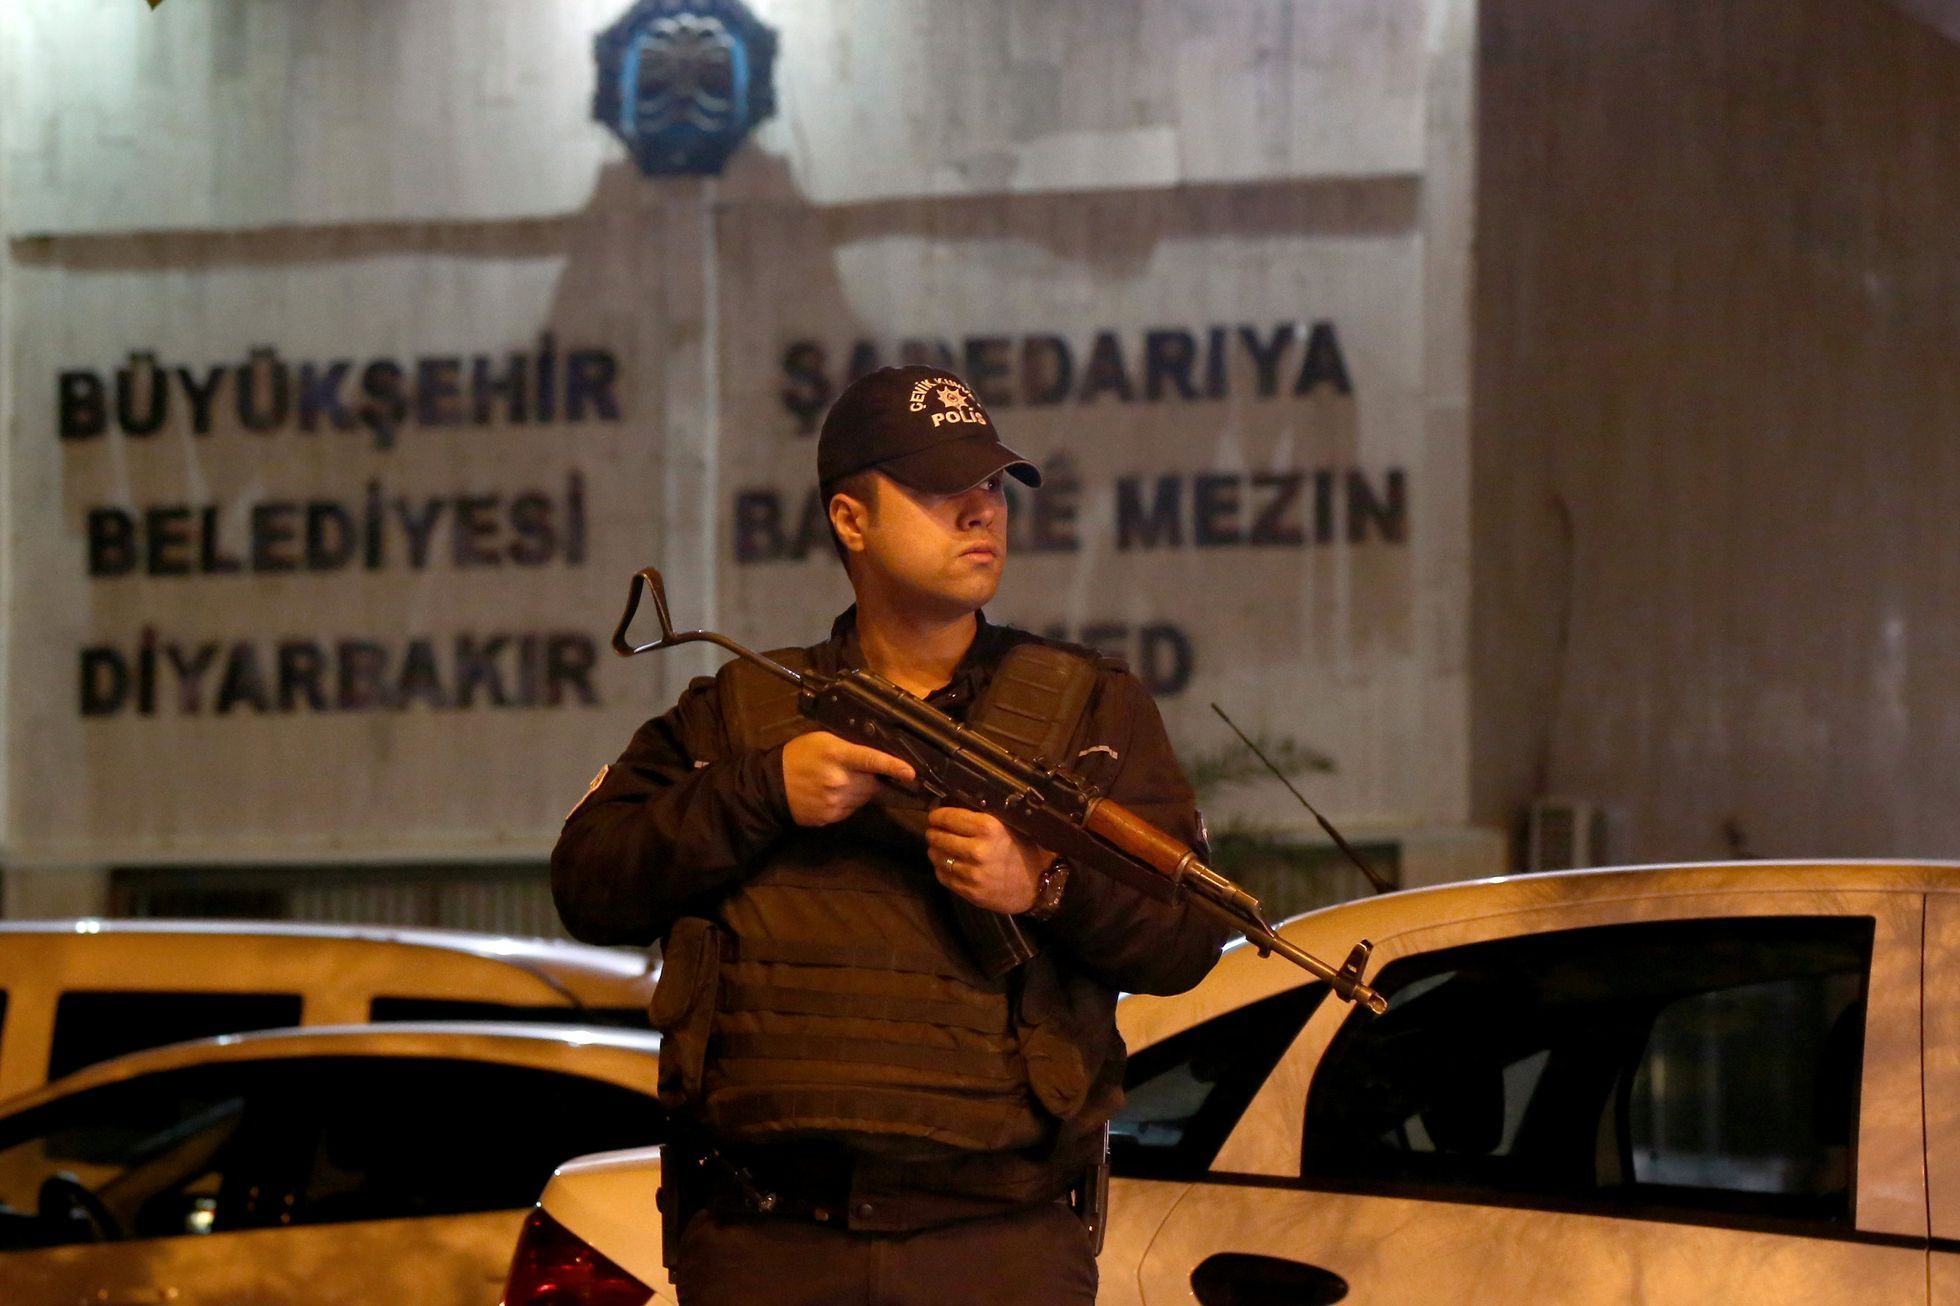 Turecký policista ve městě Diyarbakir